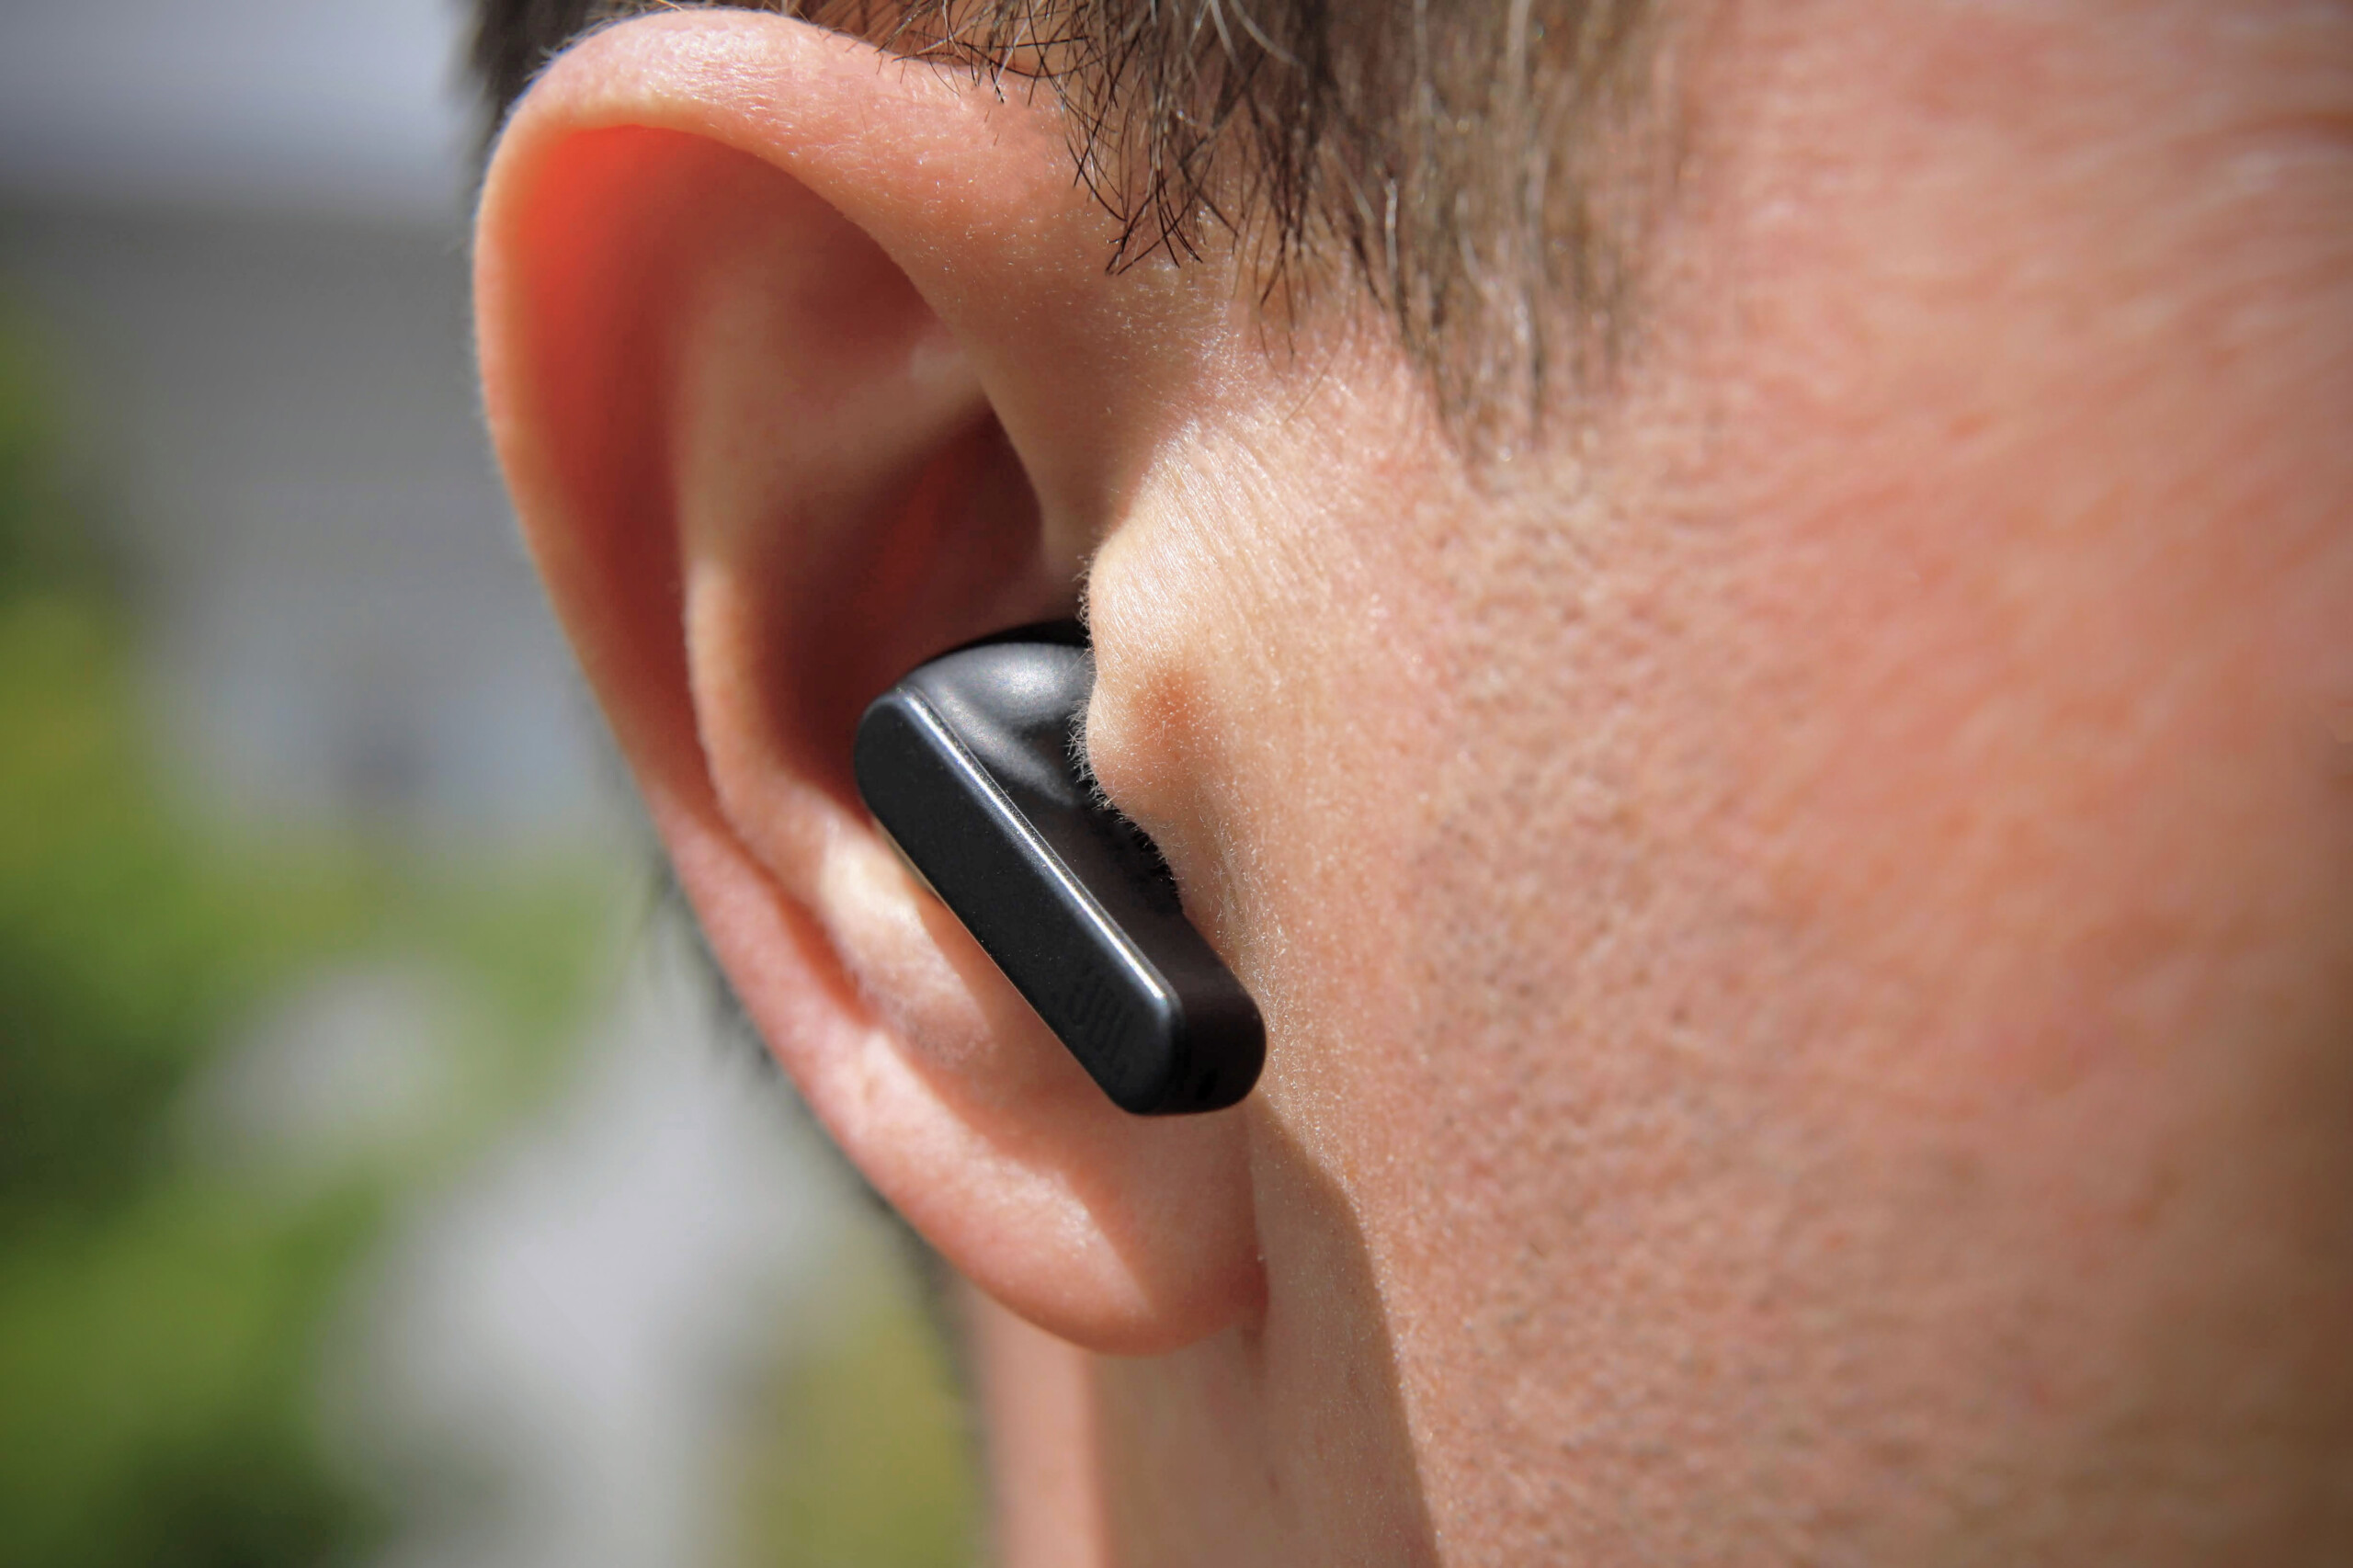 JBL Écouteurs sans fil Bluetooth avec étui de charge - Live Pro+